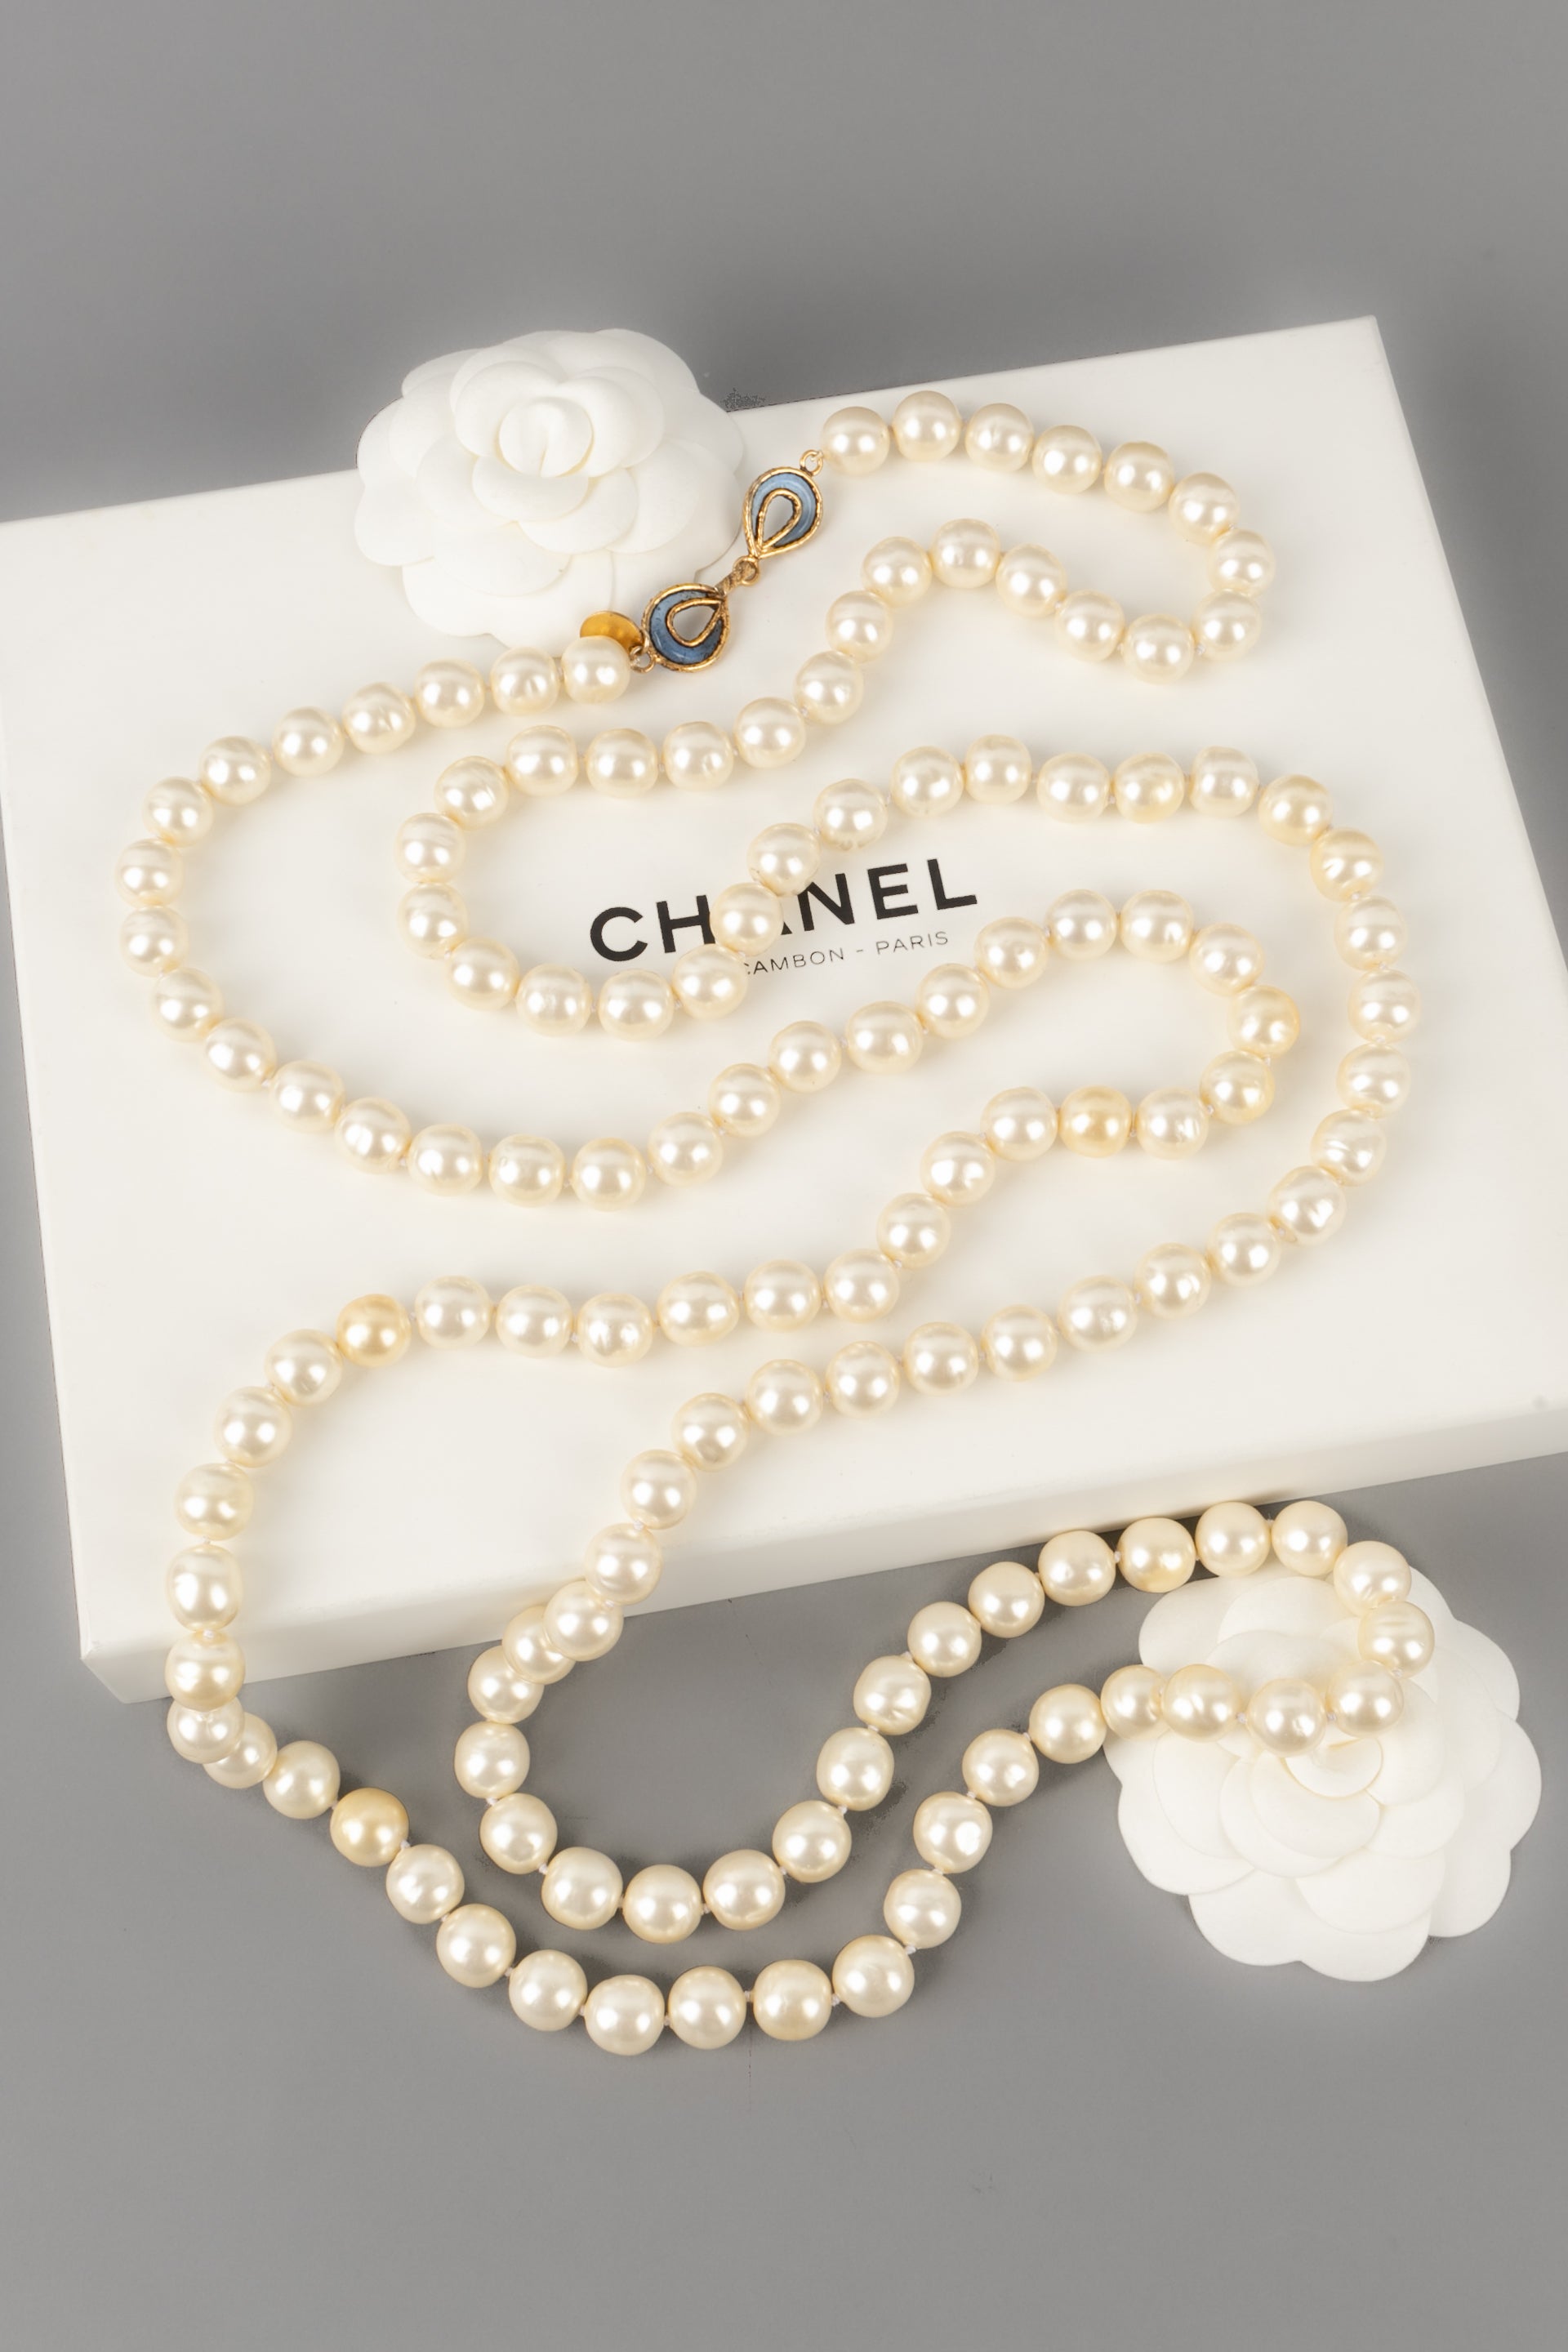 Chanel Faux Pearl Sautoir Necklace, 1981 Auction